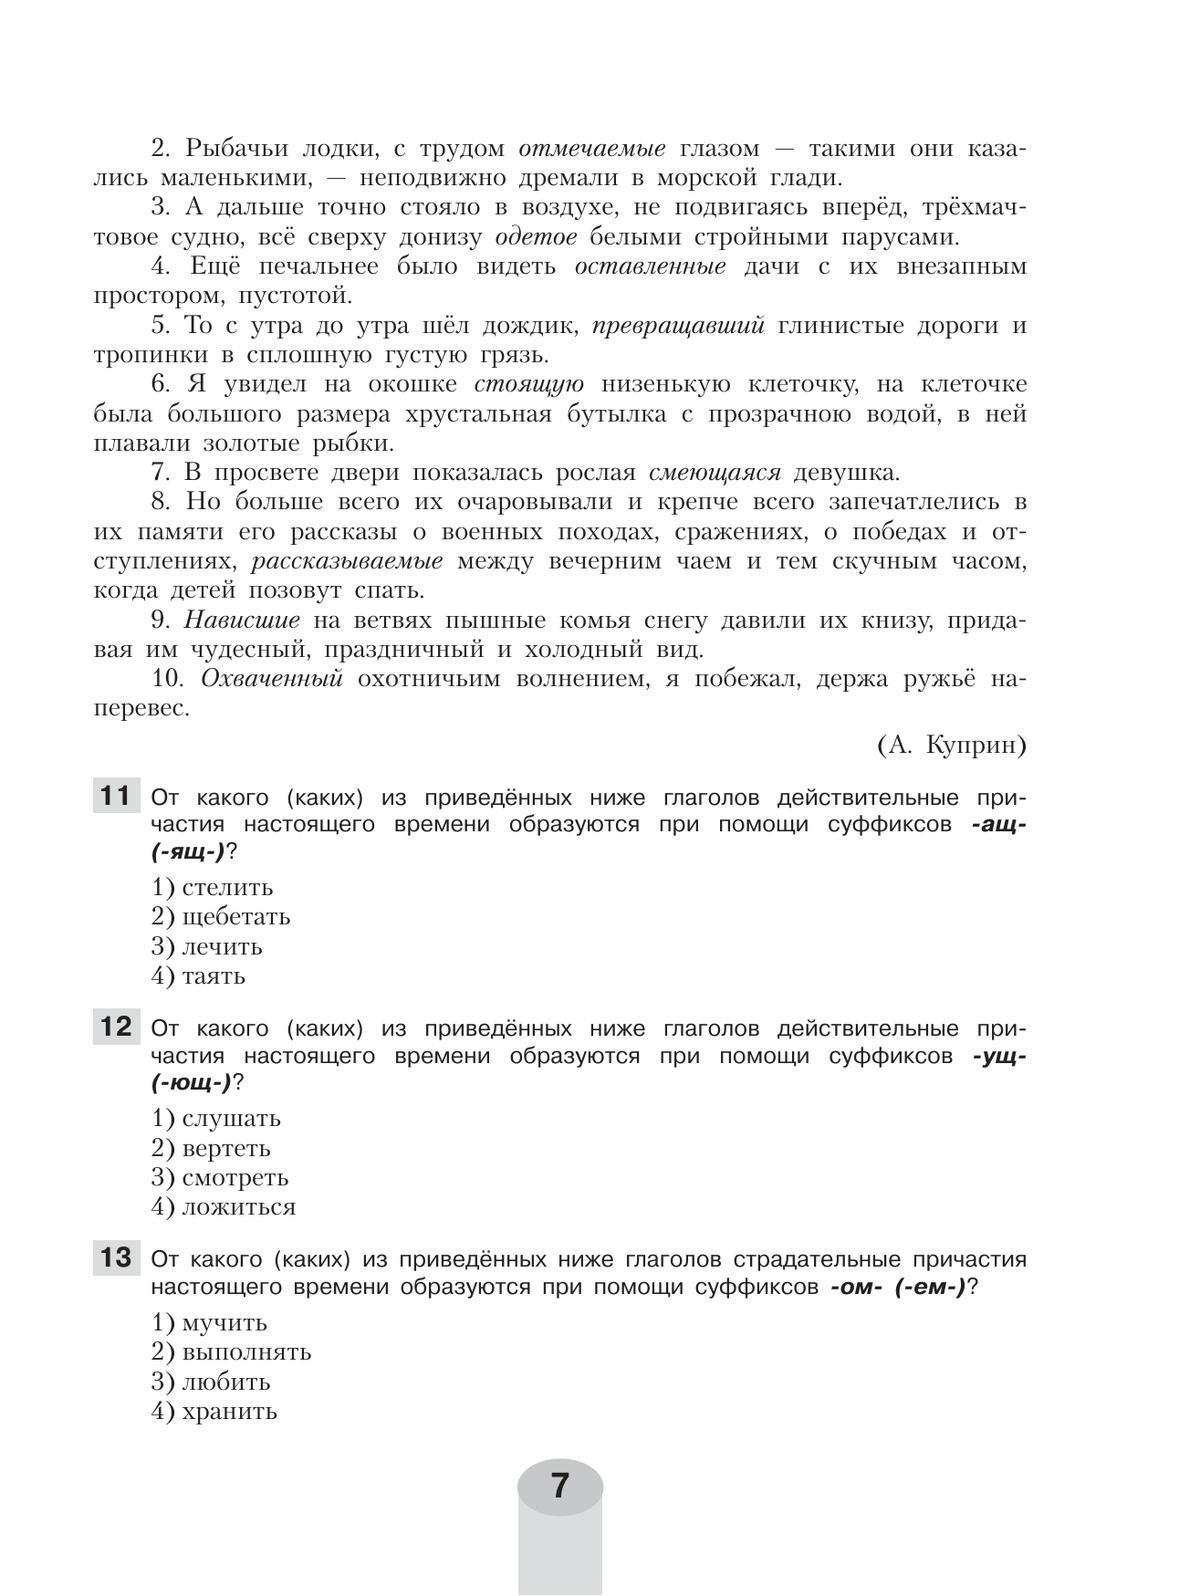 Русский язык. Самостоятельные и контрольные работы. 7 класс 10